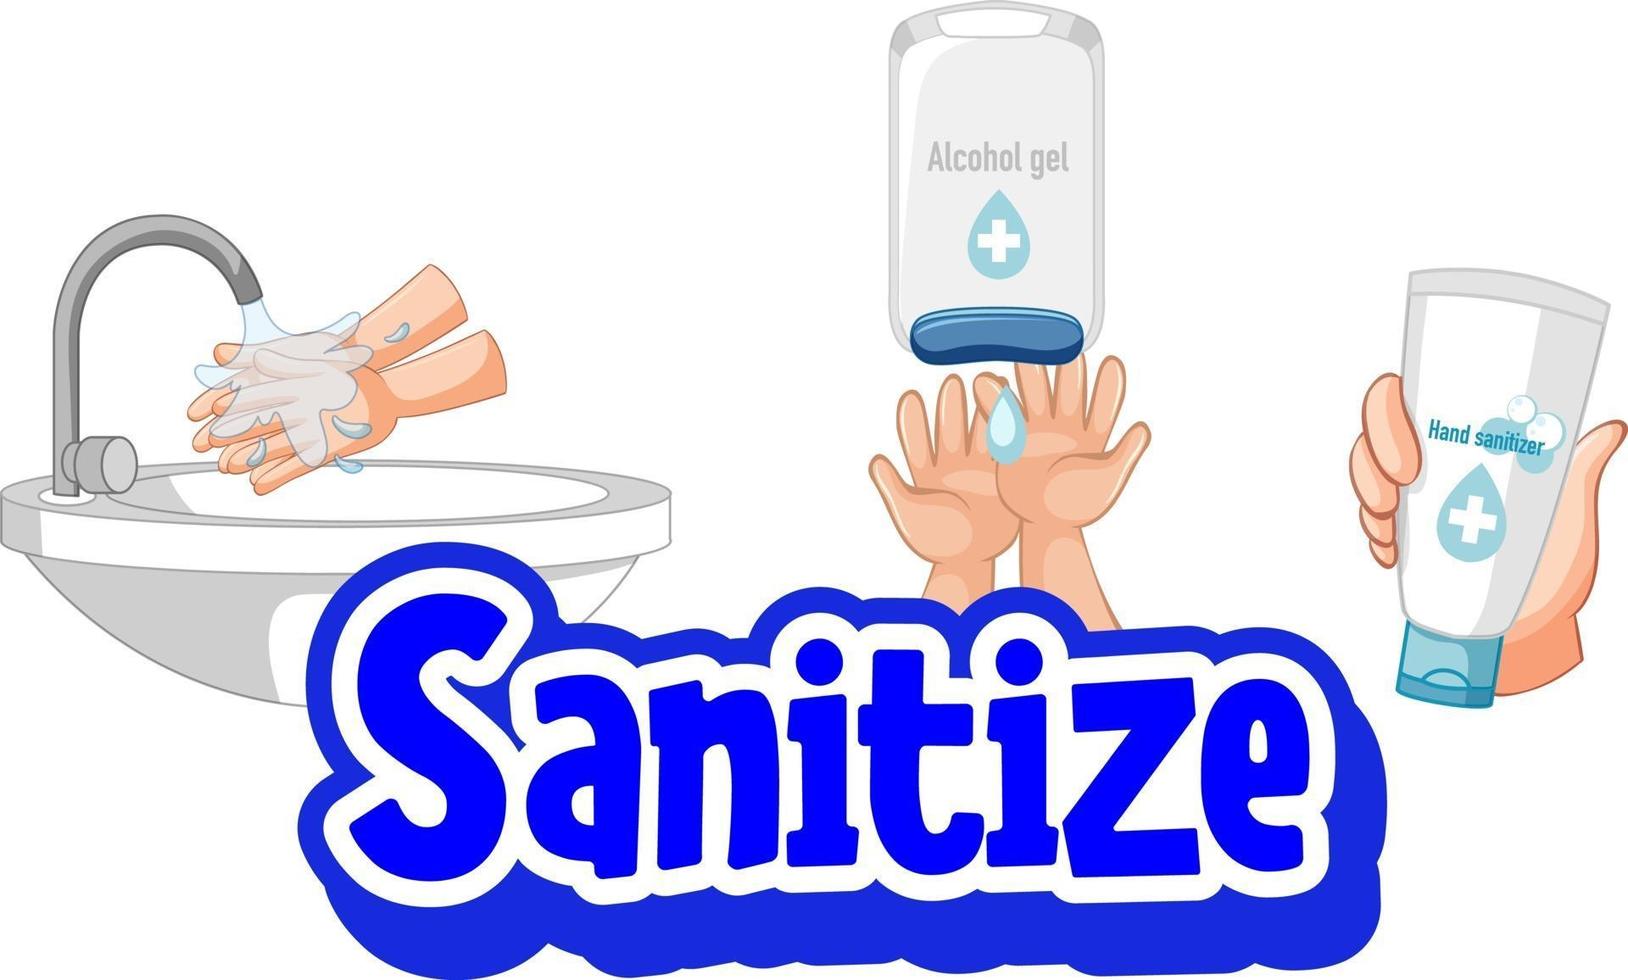 ontsmet lettertype in cartoonstijl met handen wassen met waterkraan en ontsmettingsproducten vector